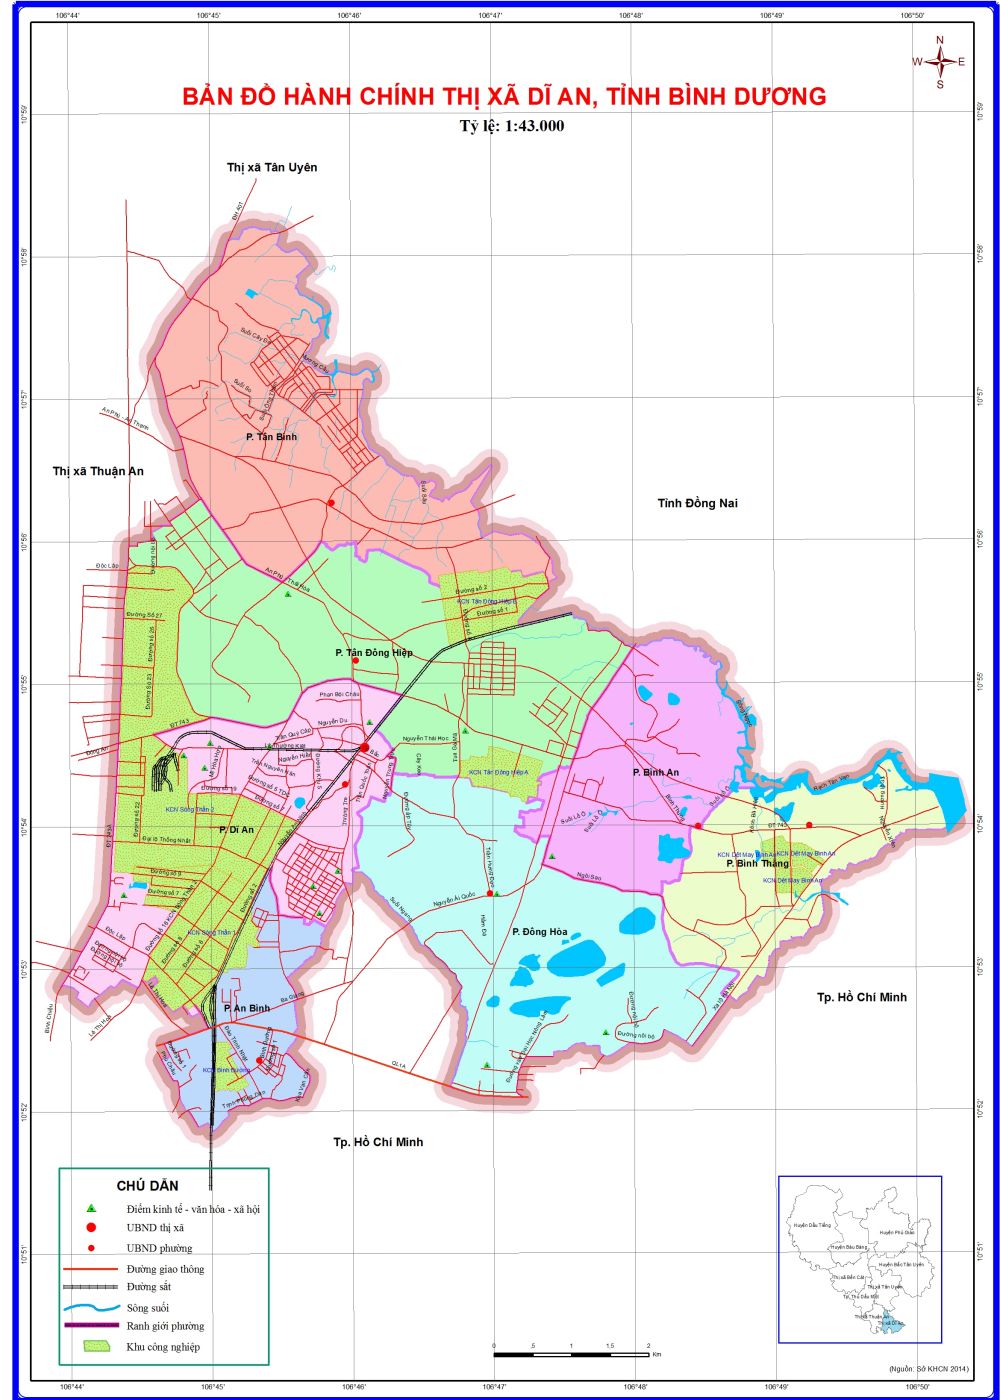 Bản đồ hành chính thành phố Dĩ An